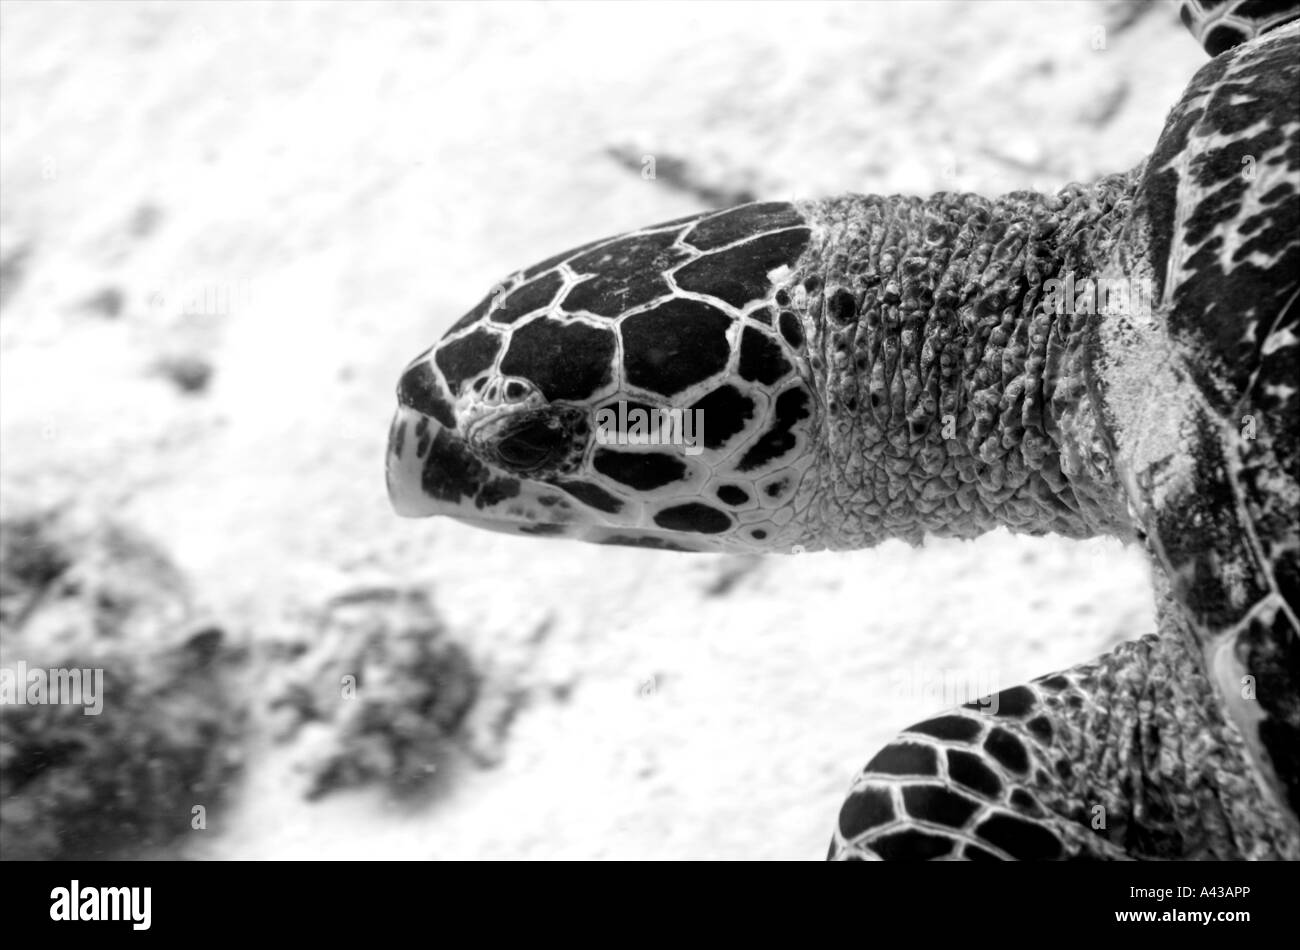 Una Tortuga Carey busca en el arrecife de coral en busca de comida. Foto de stock